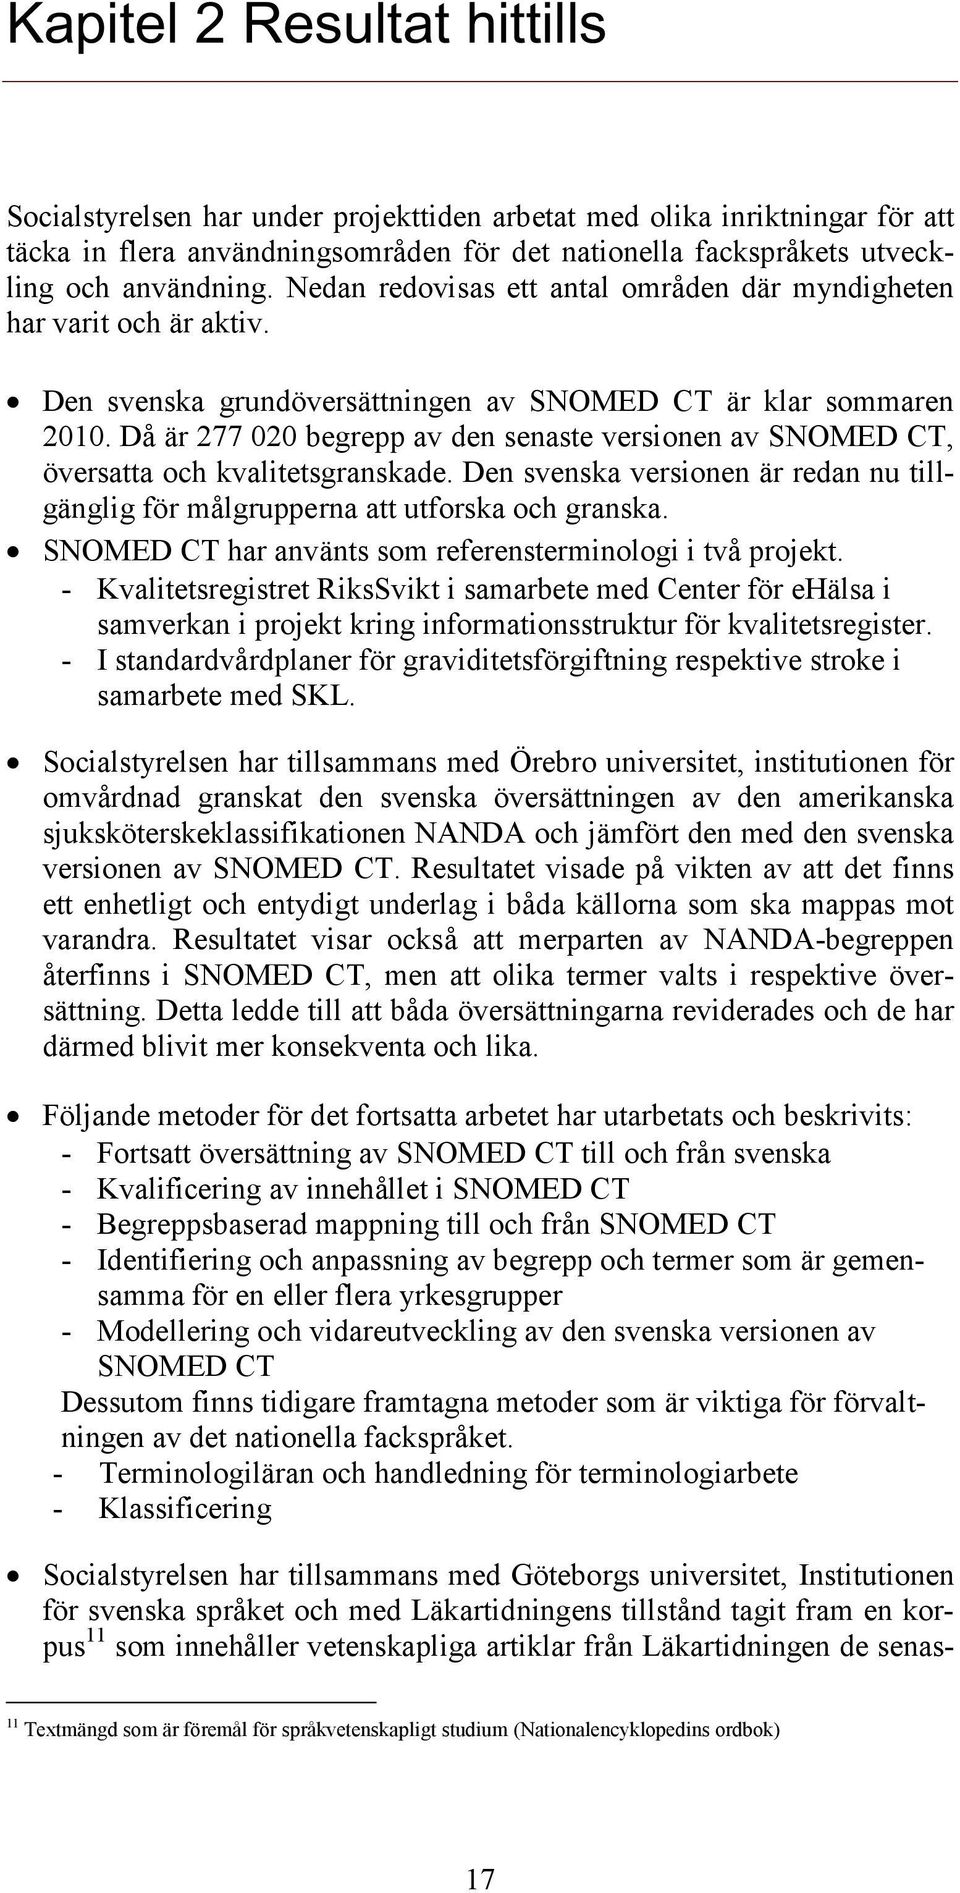 Då är 277 020 begrepp av den senaste versionen av SNOMED CT, översatta och kvalitetsgranskade. Den svenska versionen är redan nu tillgänglig för målgrupperna att utforska och granska.